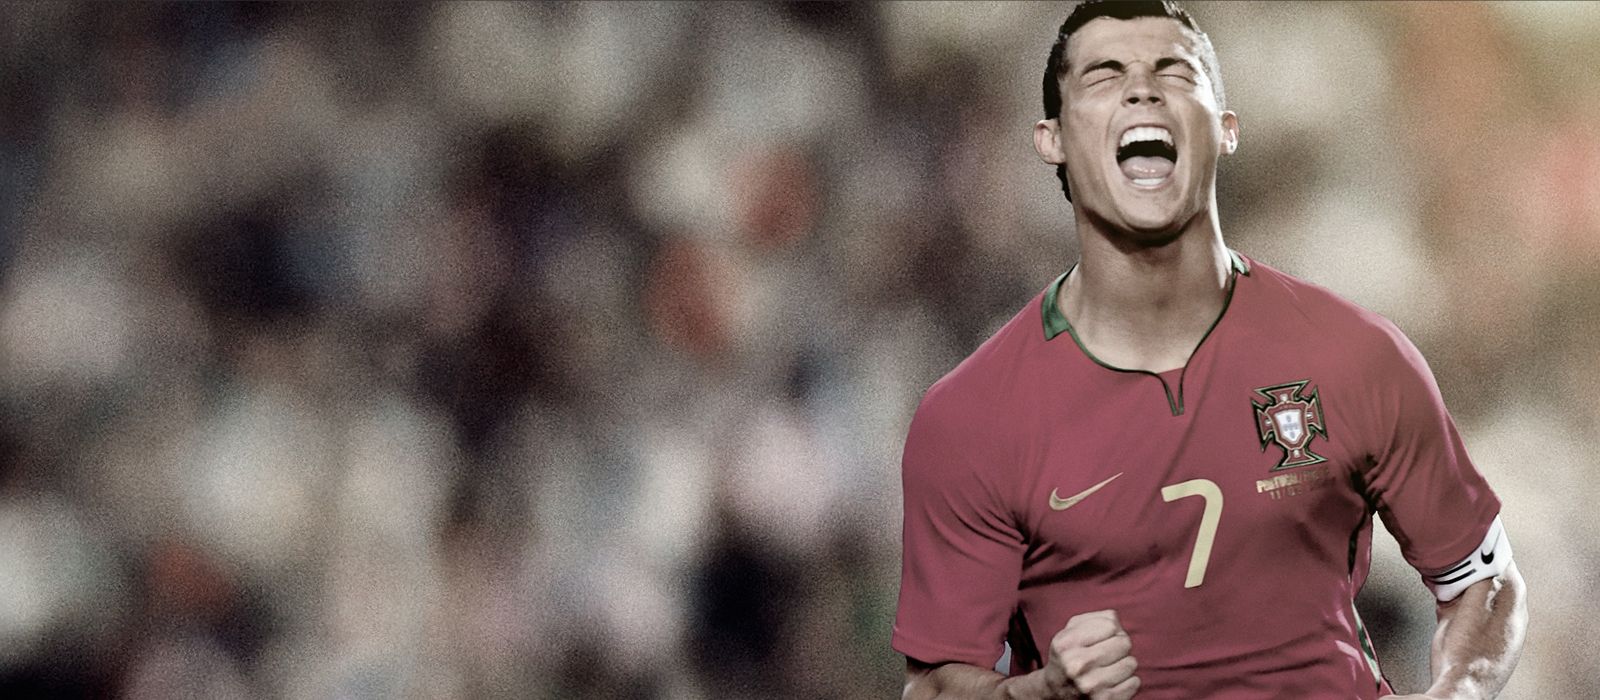 CR7 Cristiano Ronaldo Nike